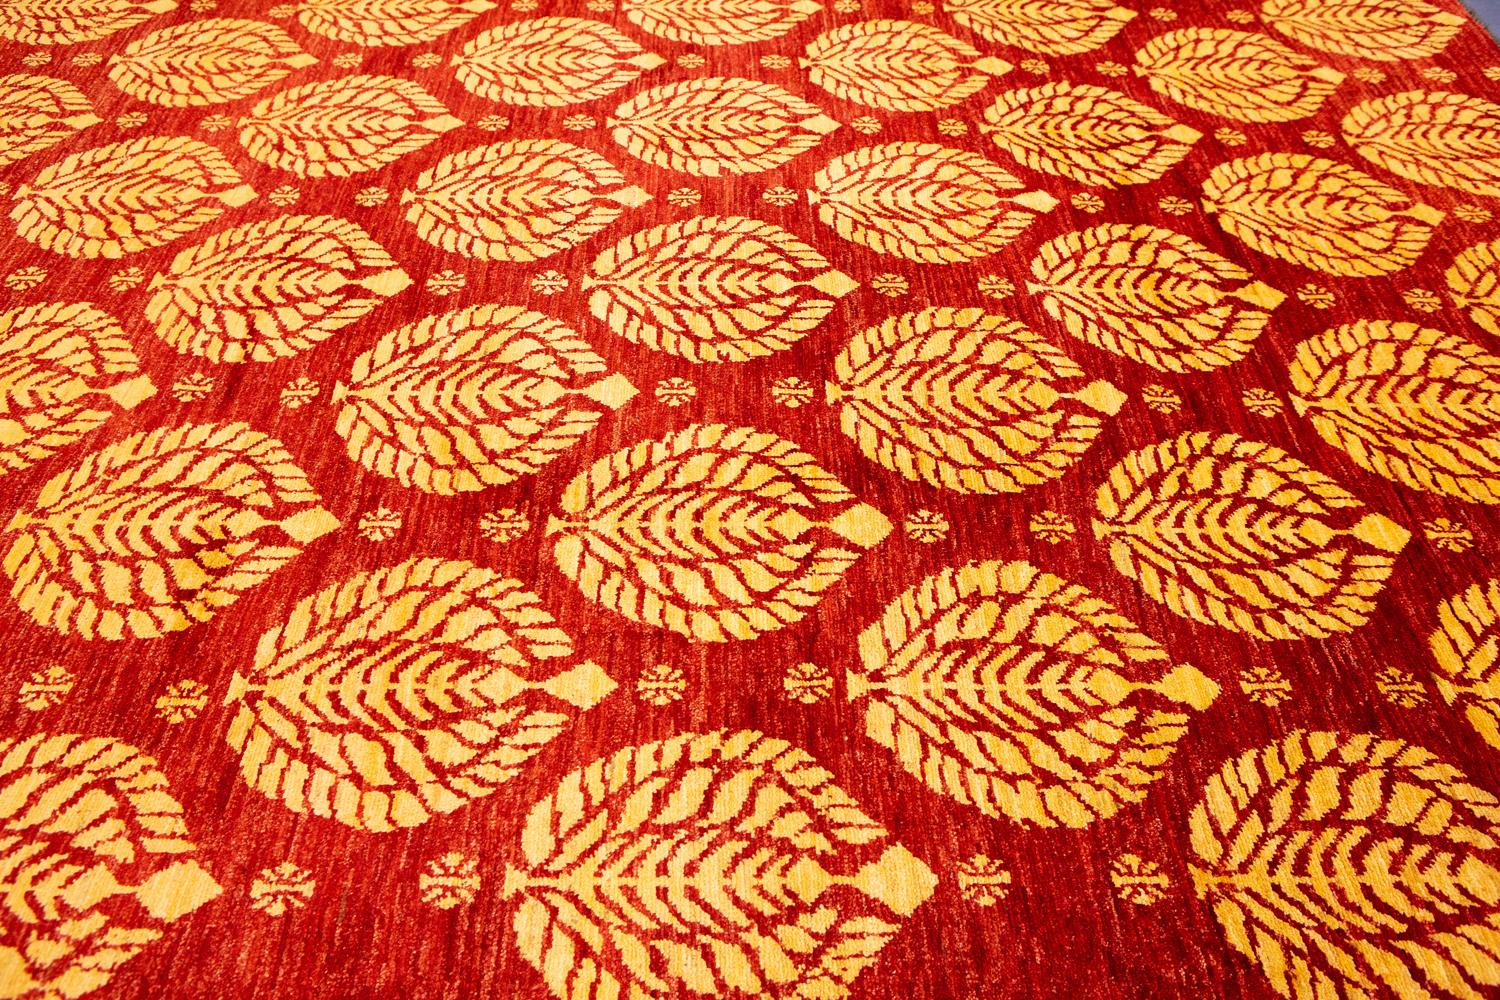 Dieser handgeknüpfte Teppich von Etno Yadan ist ein Kunstwerk für Ihren Boden. Das rote und moderne Design ist kühn und schön, und die hochwertige Handwerkskunst ist in jedem Detail erkennbar. Dieser Teppich verleiht jedem Raum einen Hauch von Luxus